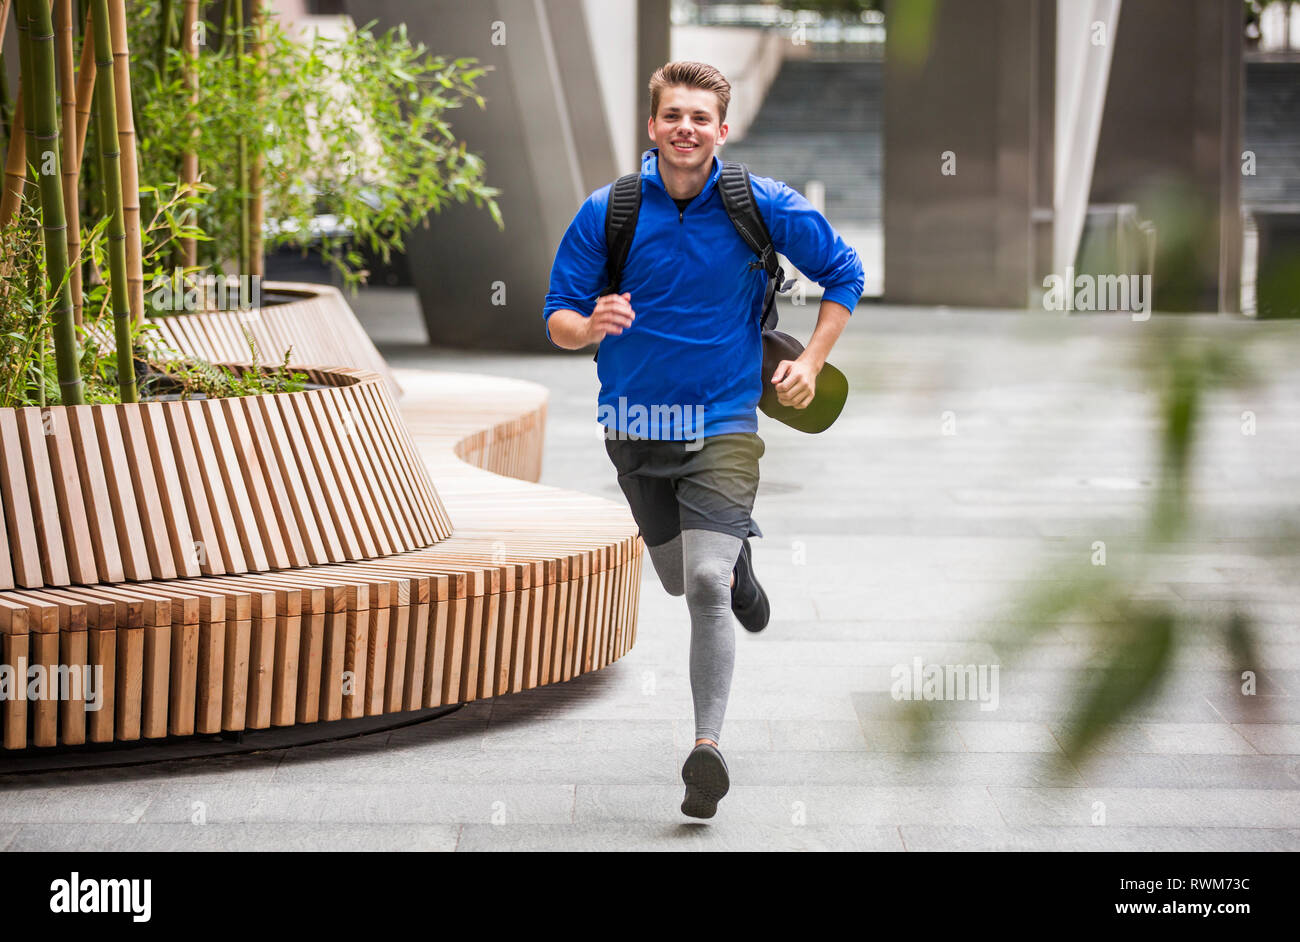 Giovani runner jogging in city square, London, Regno Unito Foto Stock